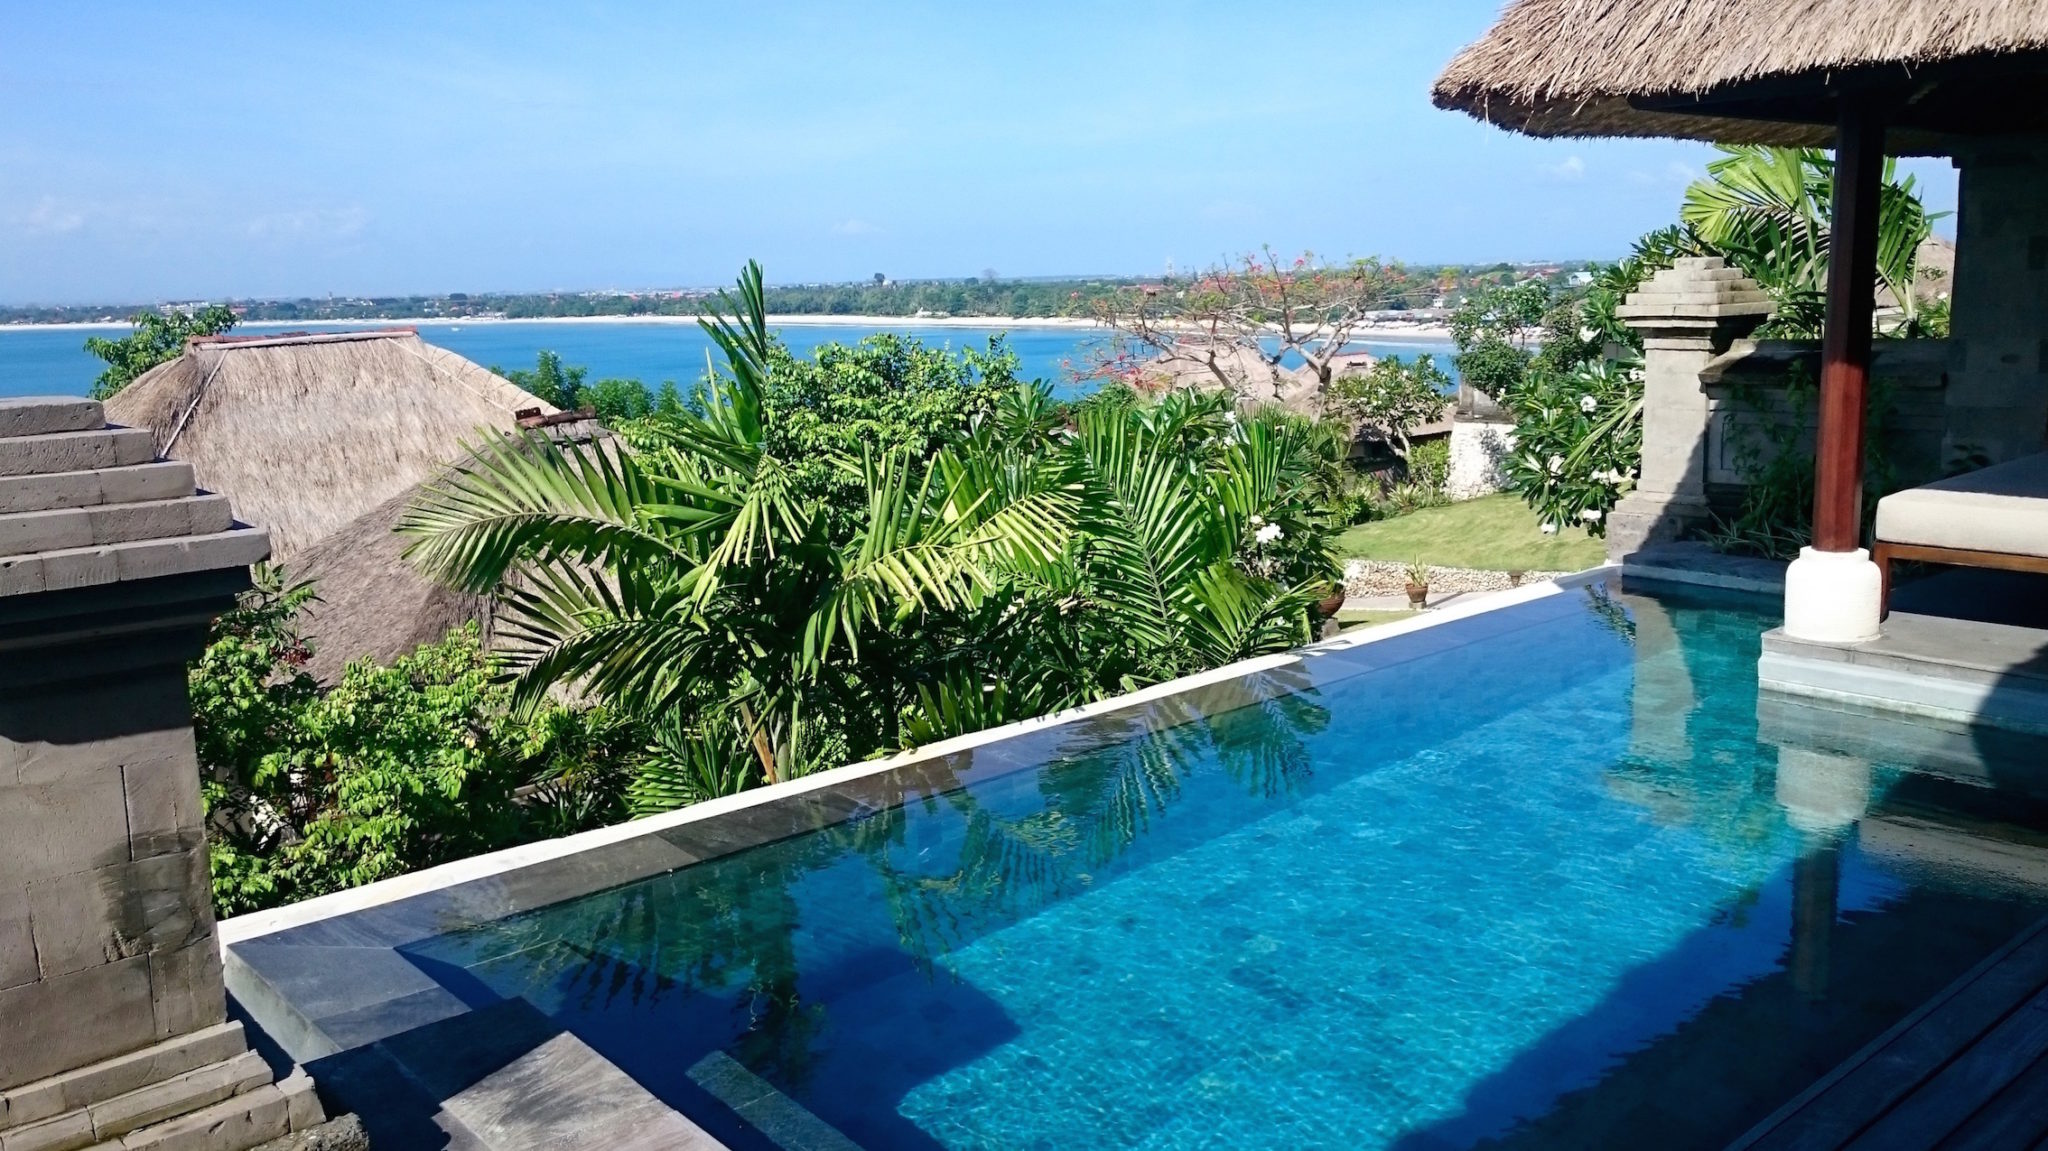 Four Seasons Resort Bali at Jimbaran Bay, Indonesia - Review